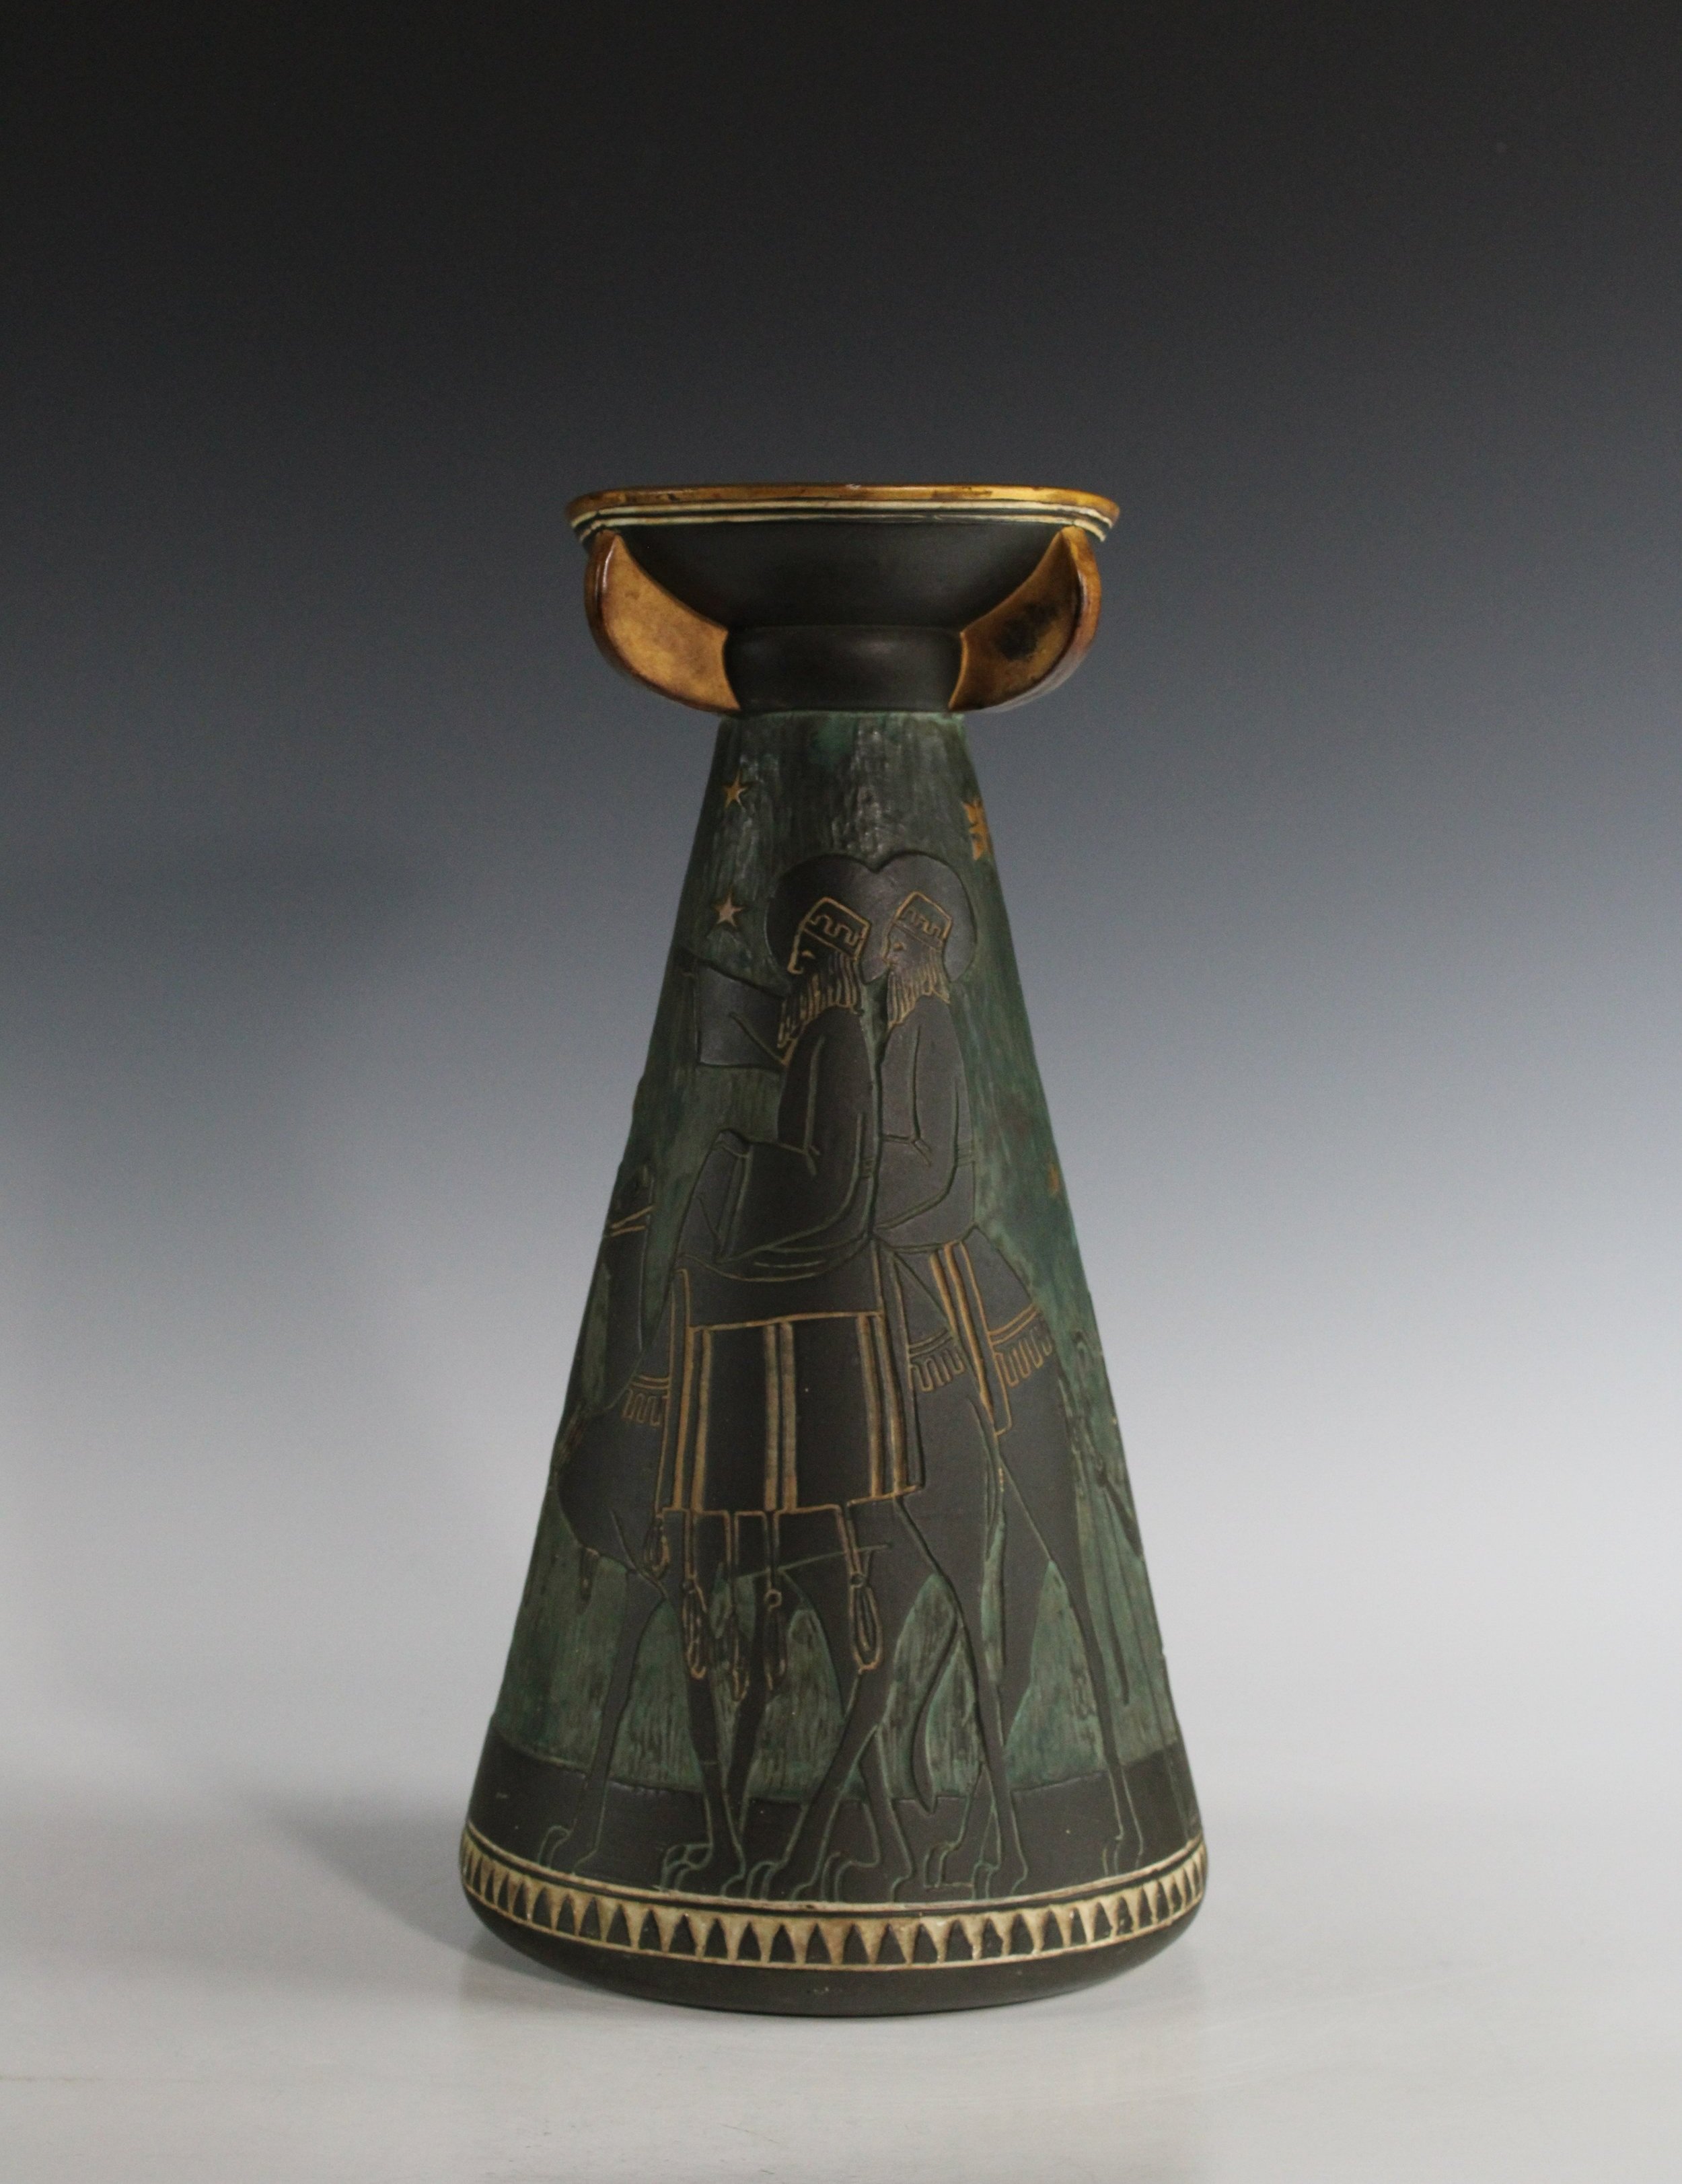 Egypta Vase